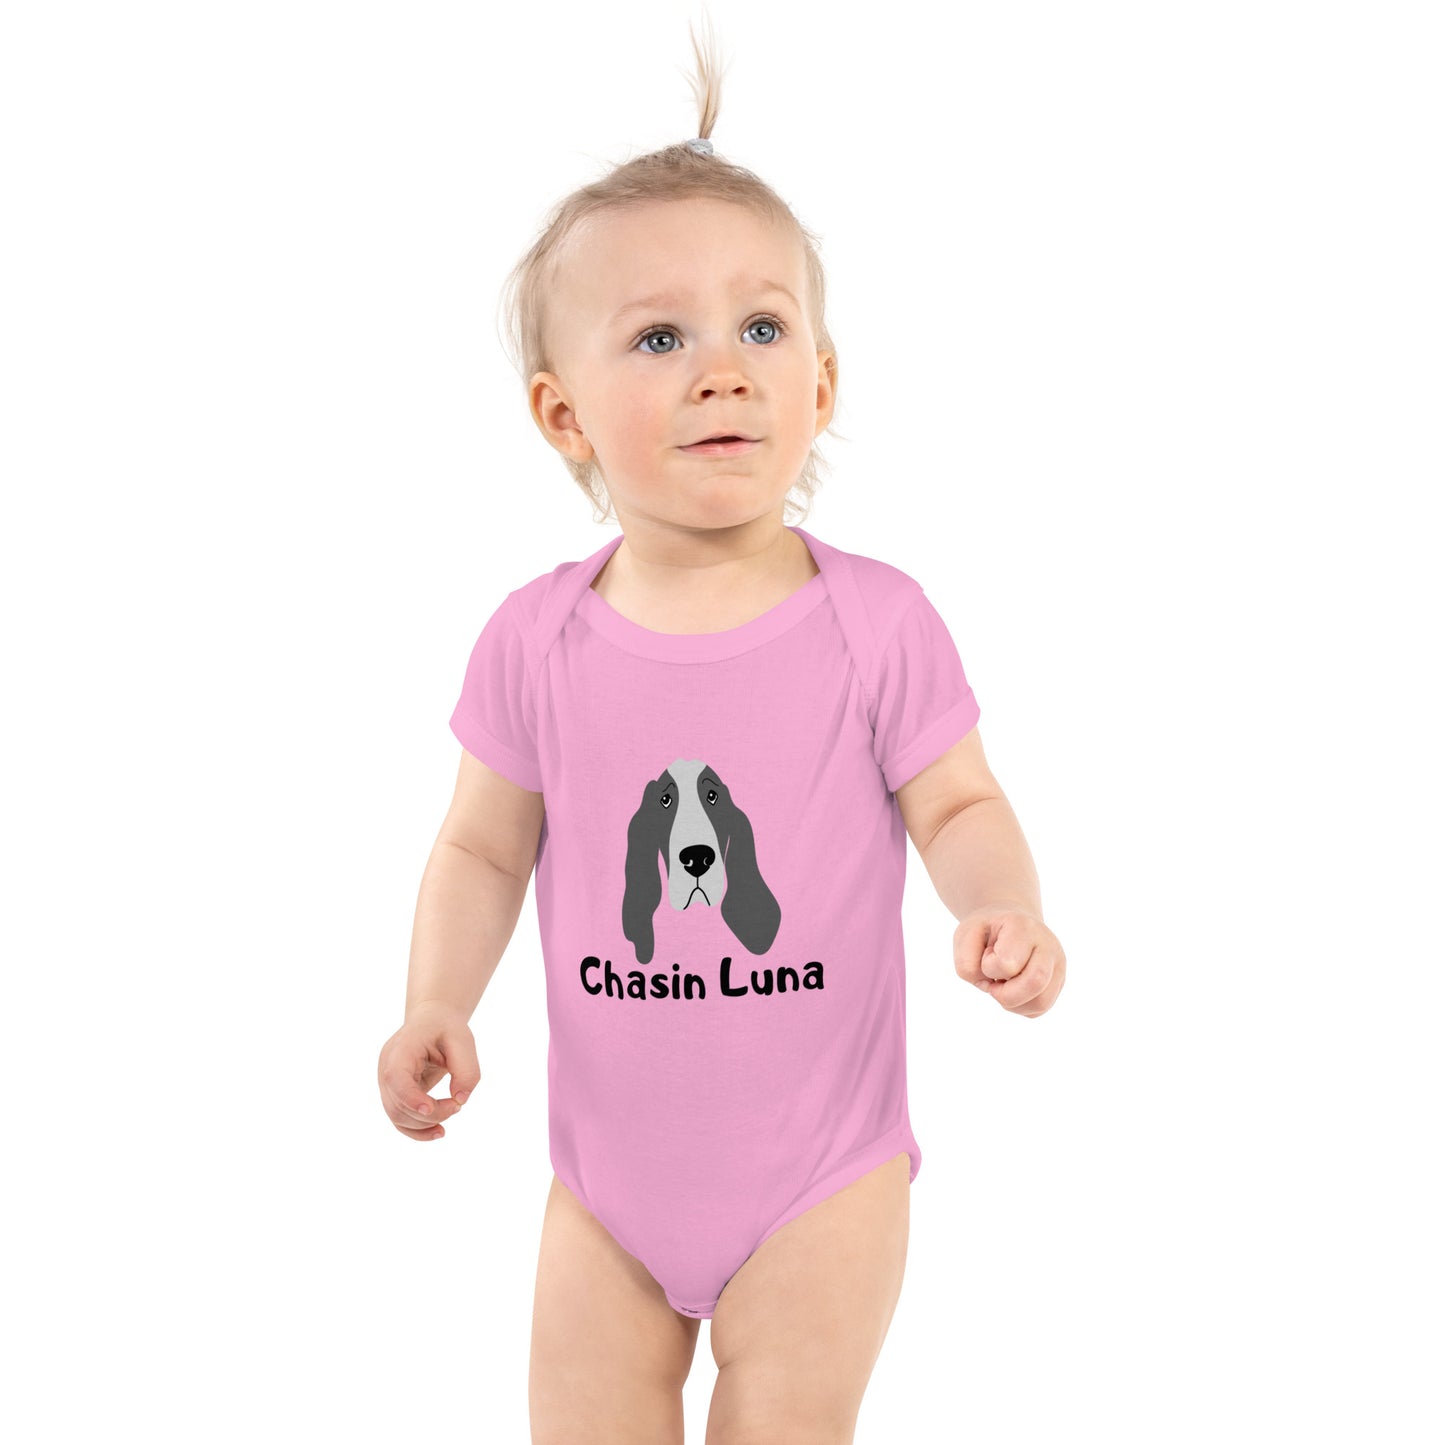 Hound Dog Infant Bodysuit